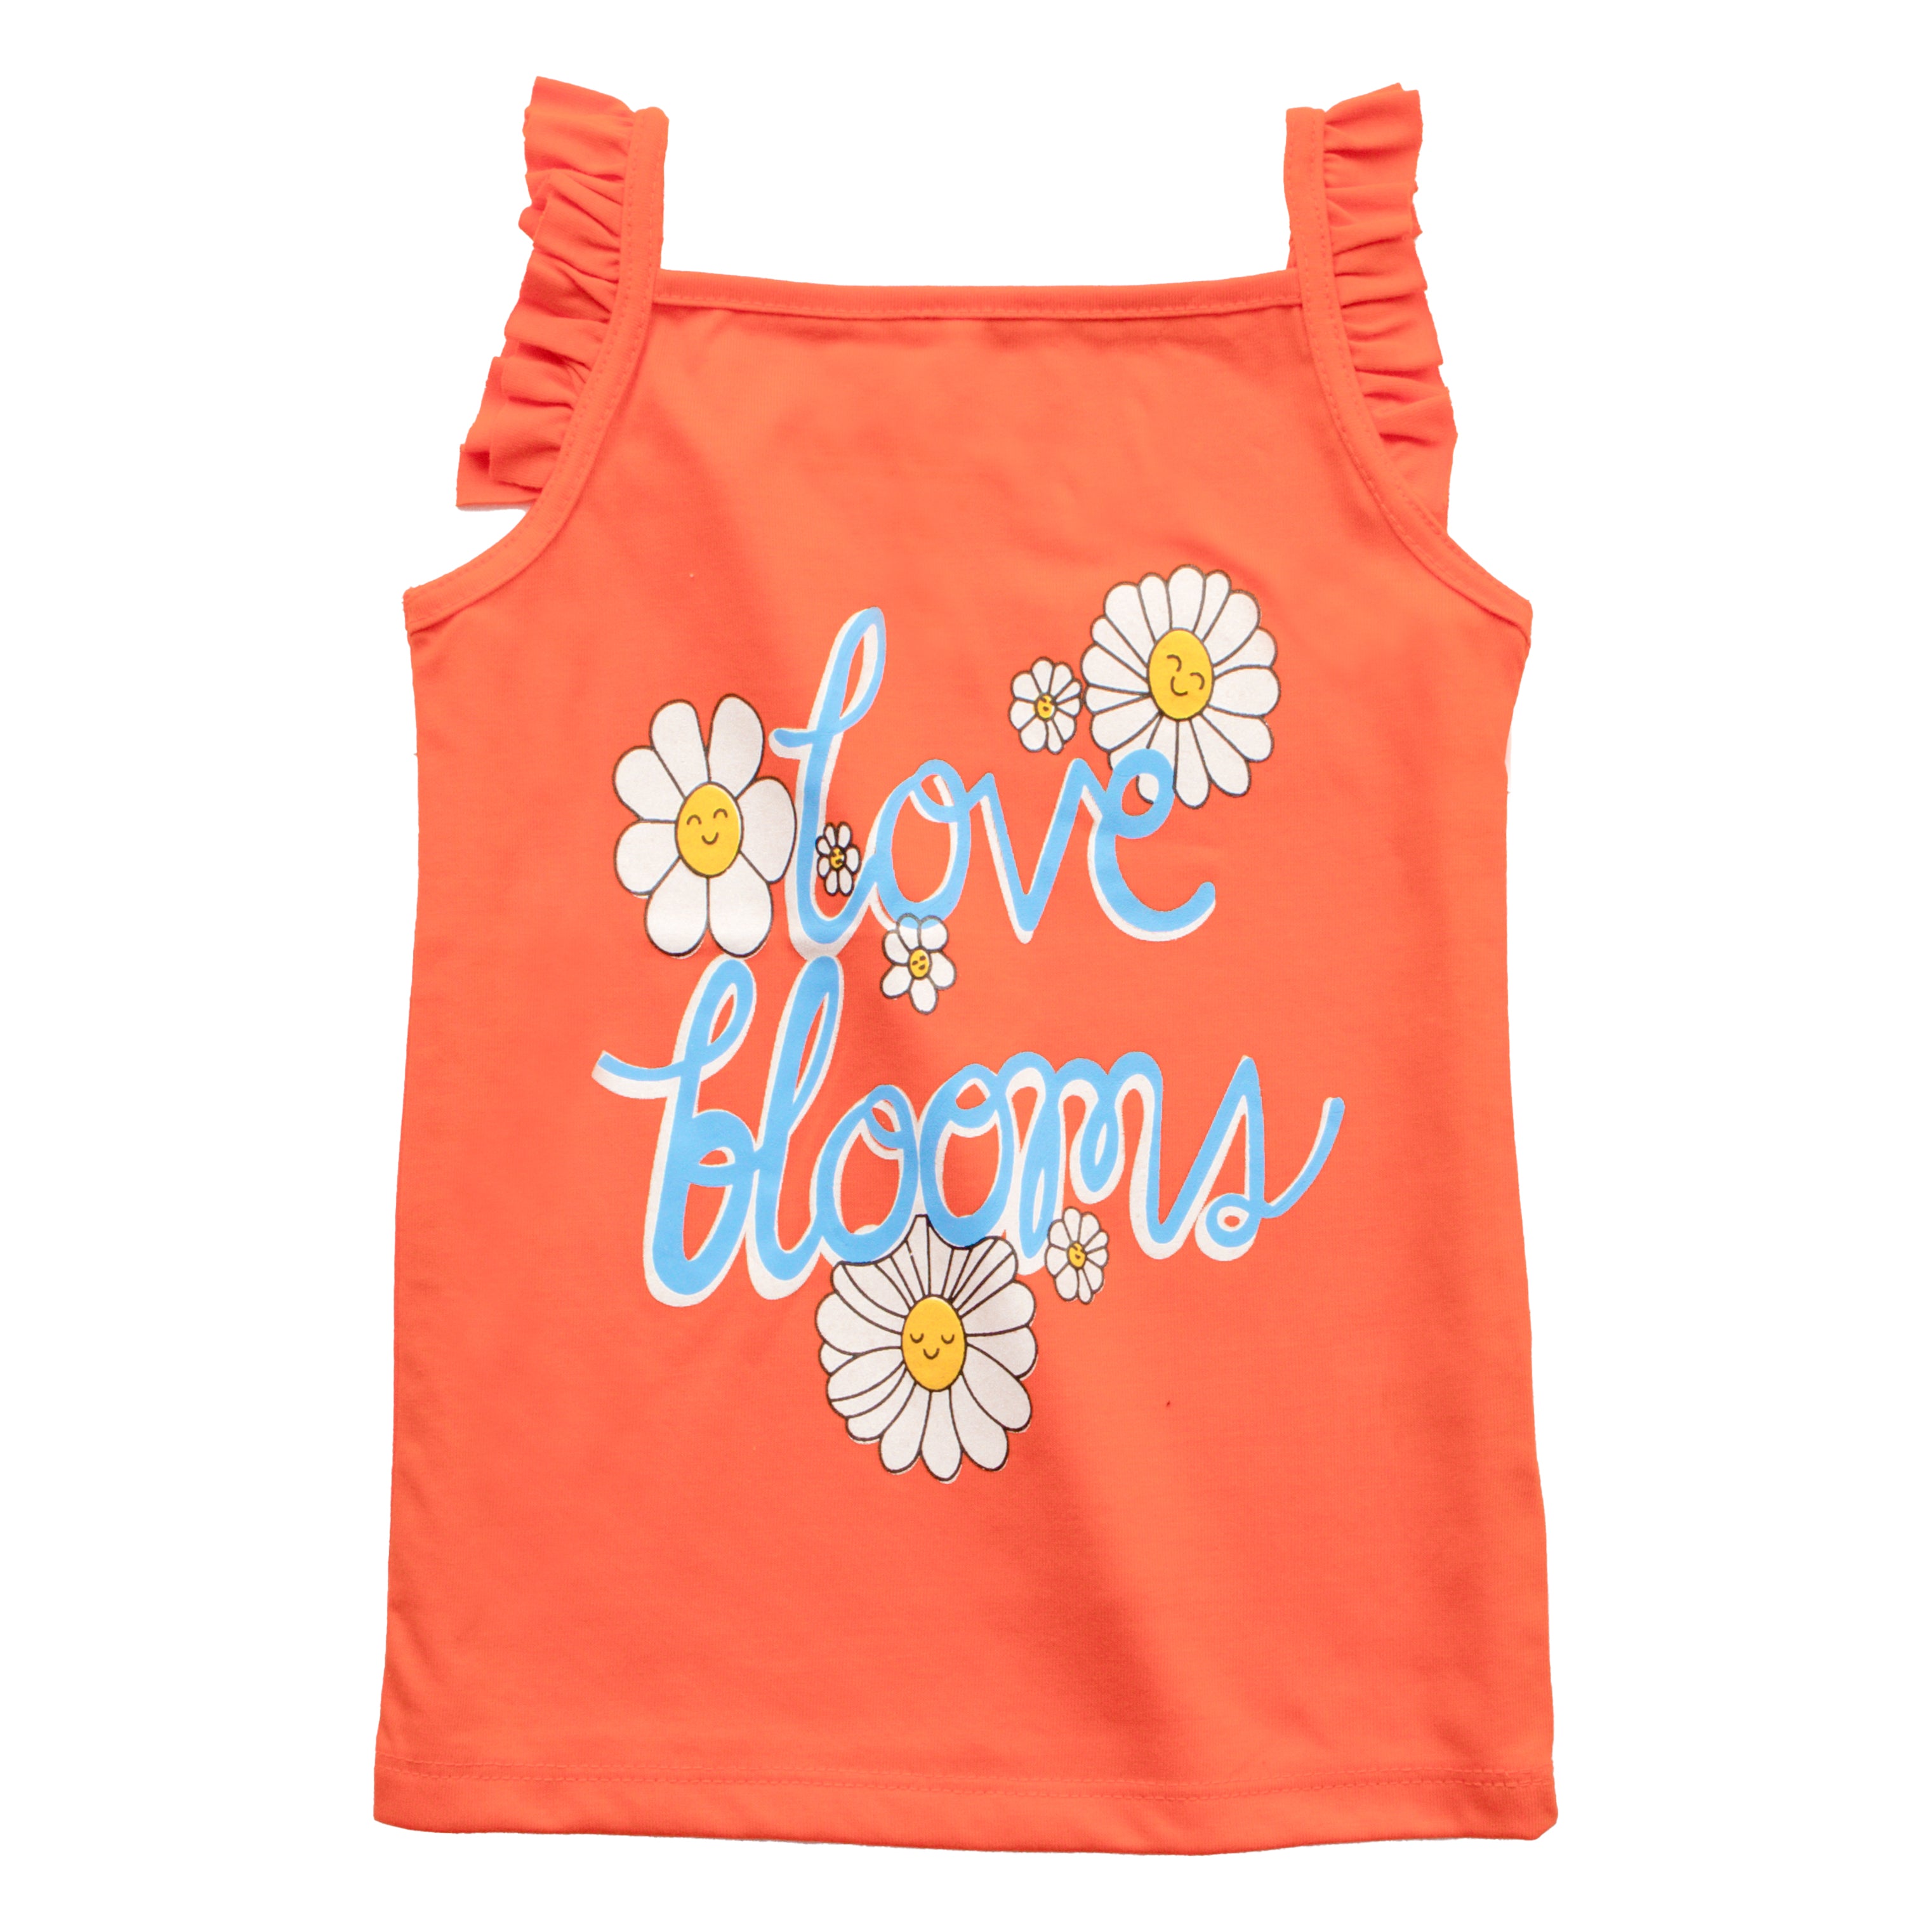 Girls sando t shirt code - (Bloom)